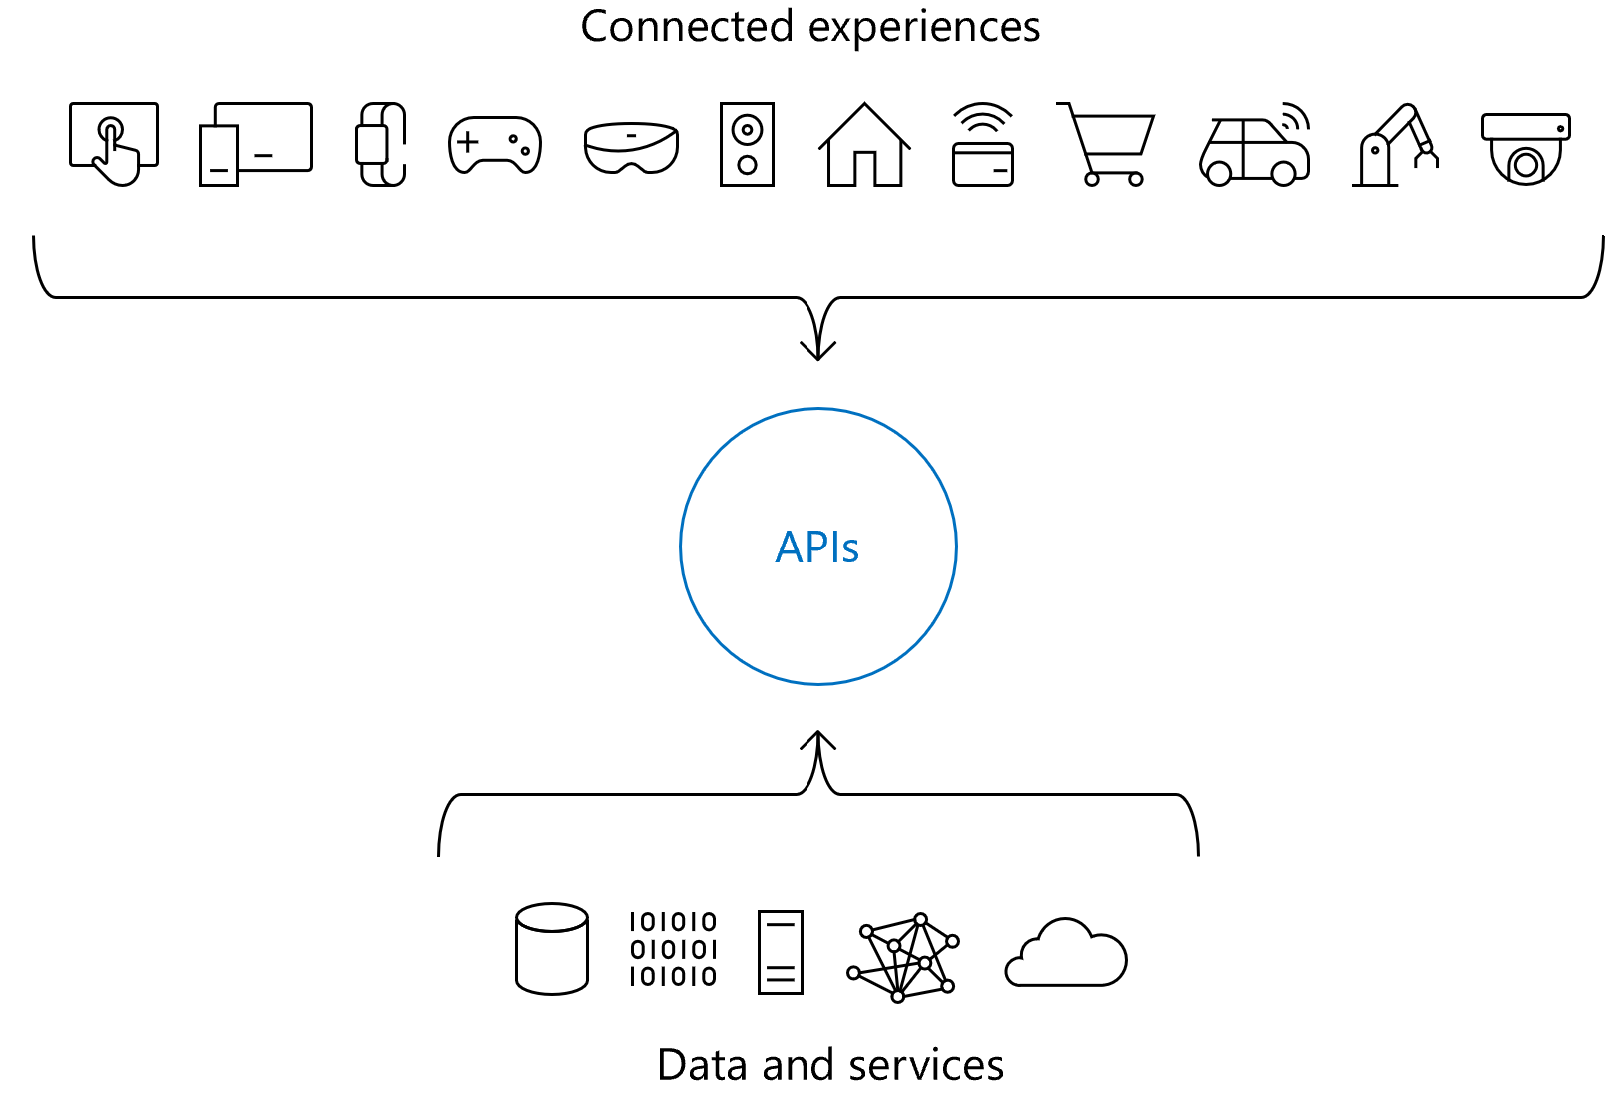 Diagramm, dass die Rolle von APIs in verbundenen Erfahrungen zeigt.